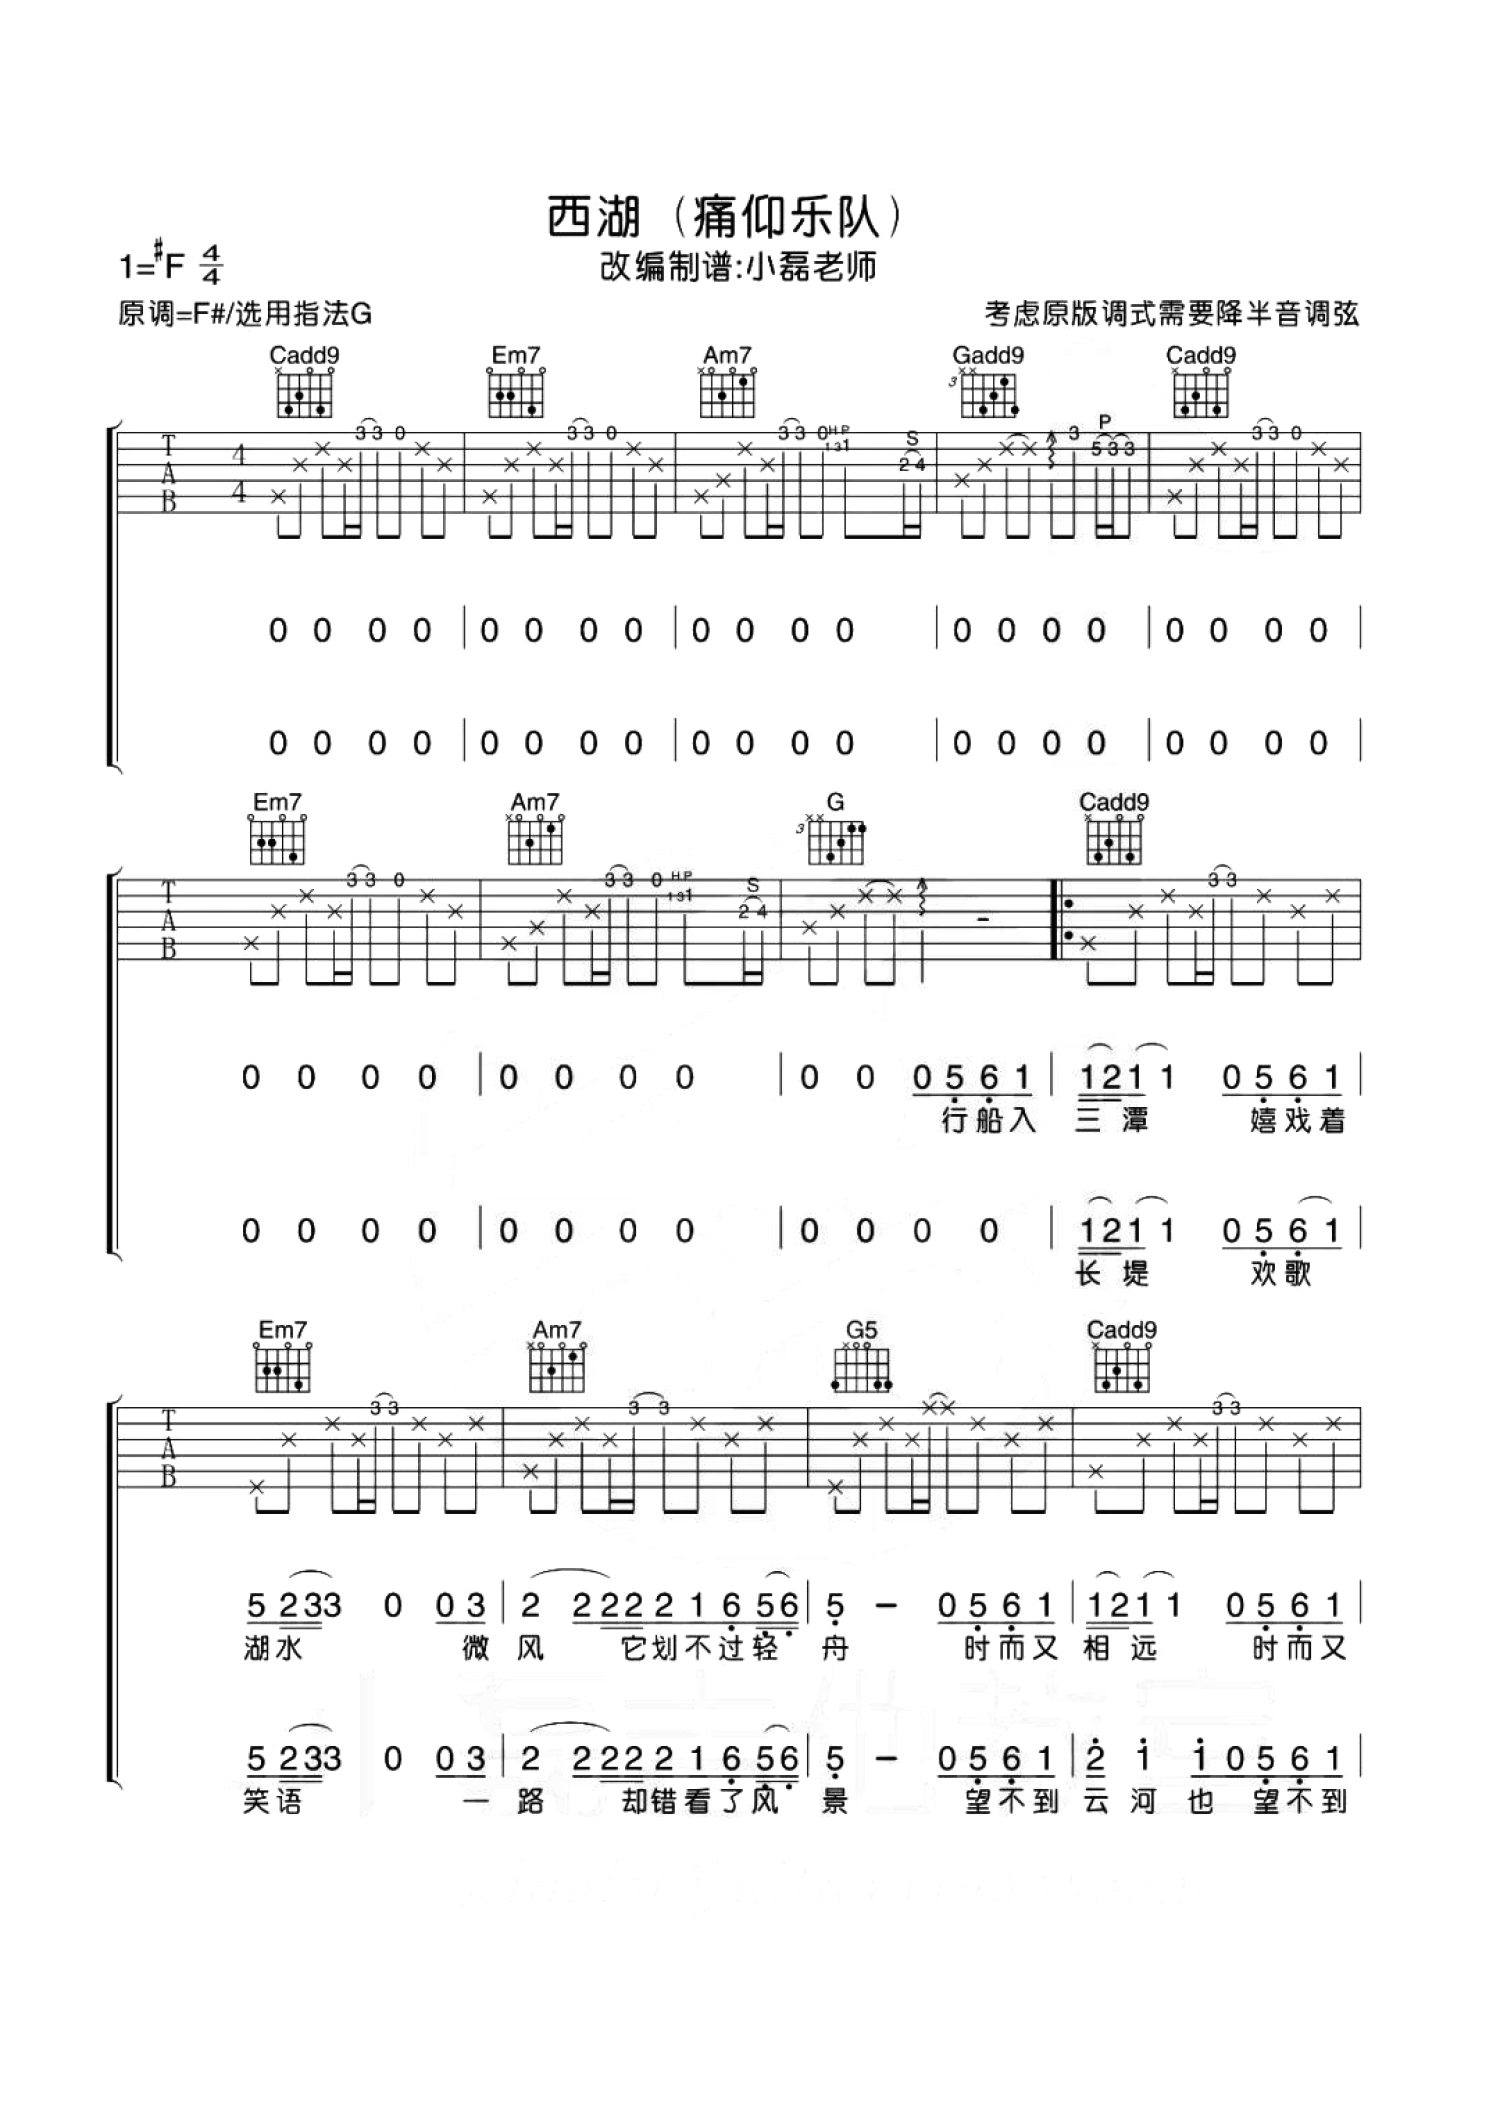 痛仰乐队《我愿意》吉他谱(C调)-Guitar Music Score-歌谱网